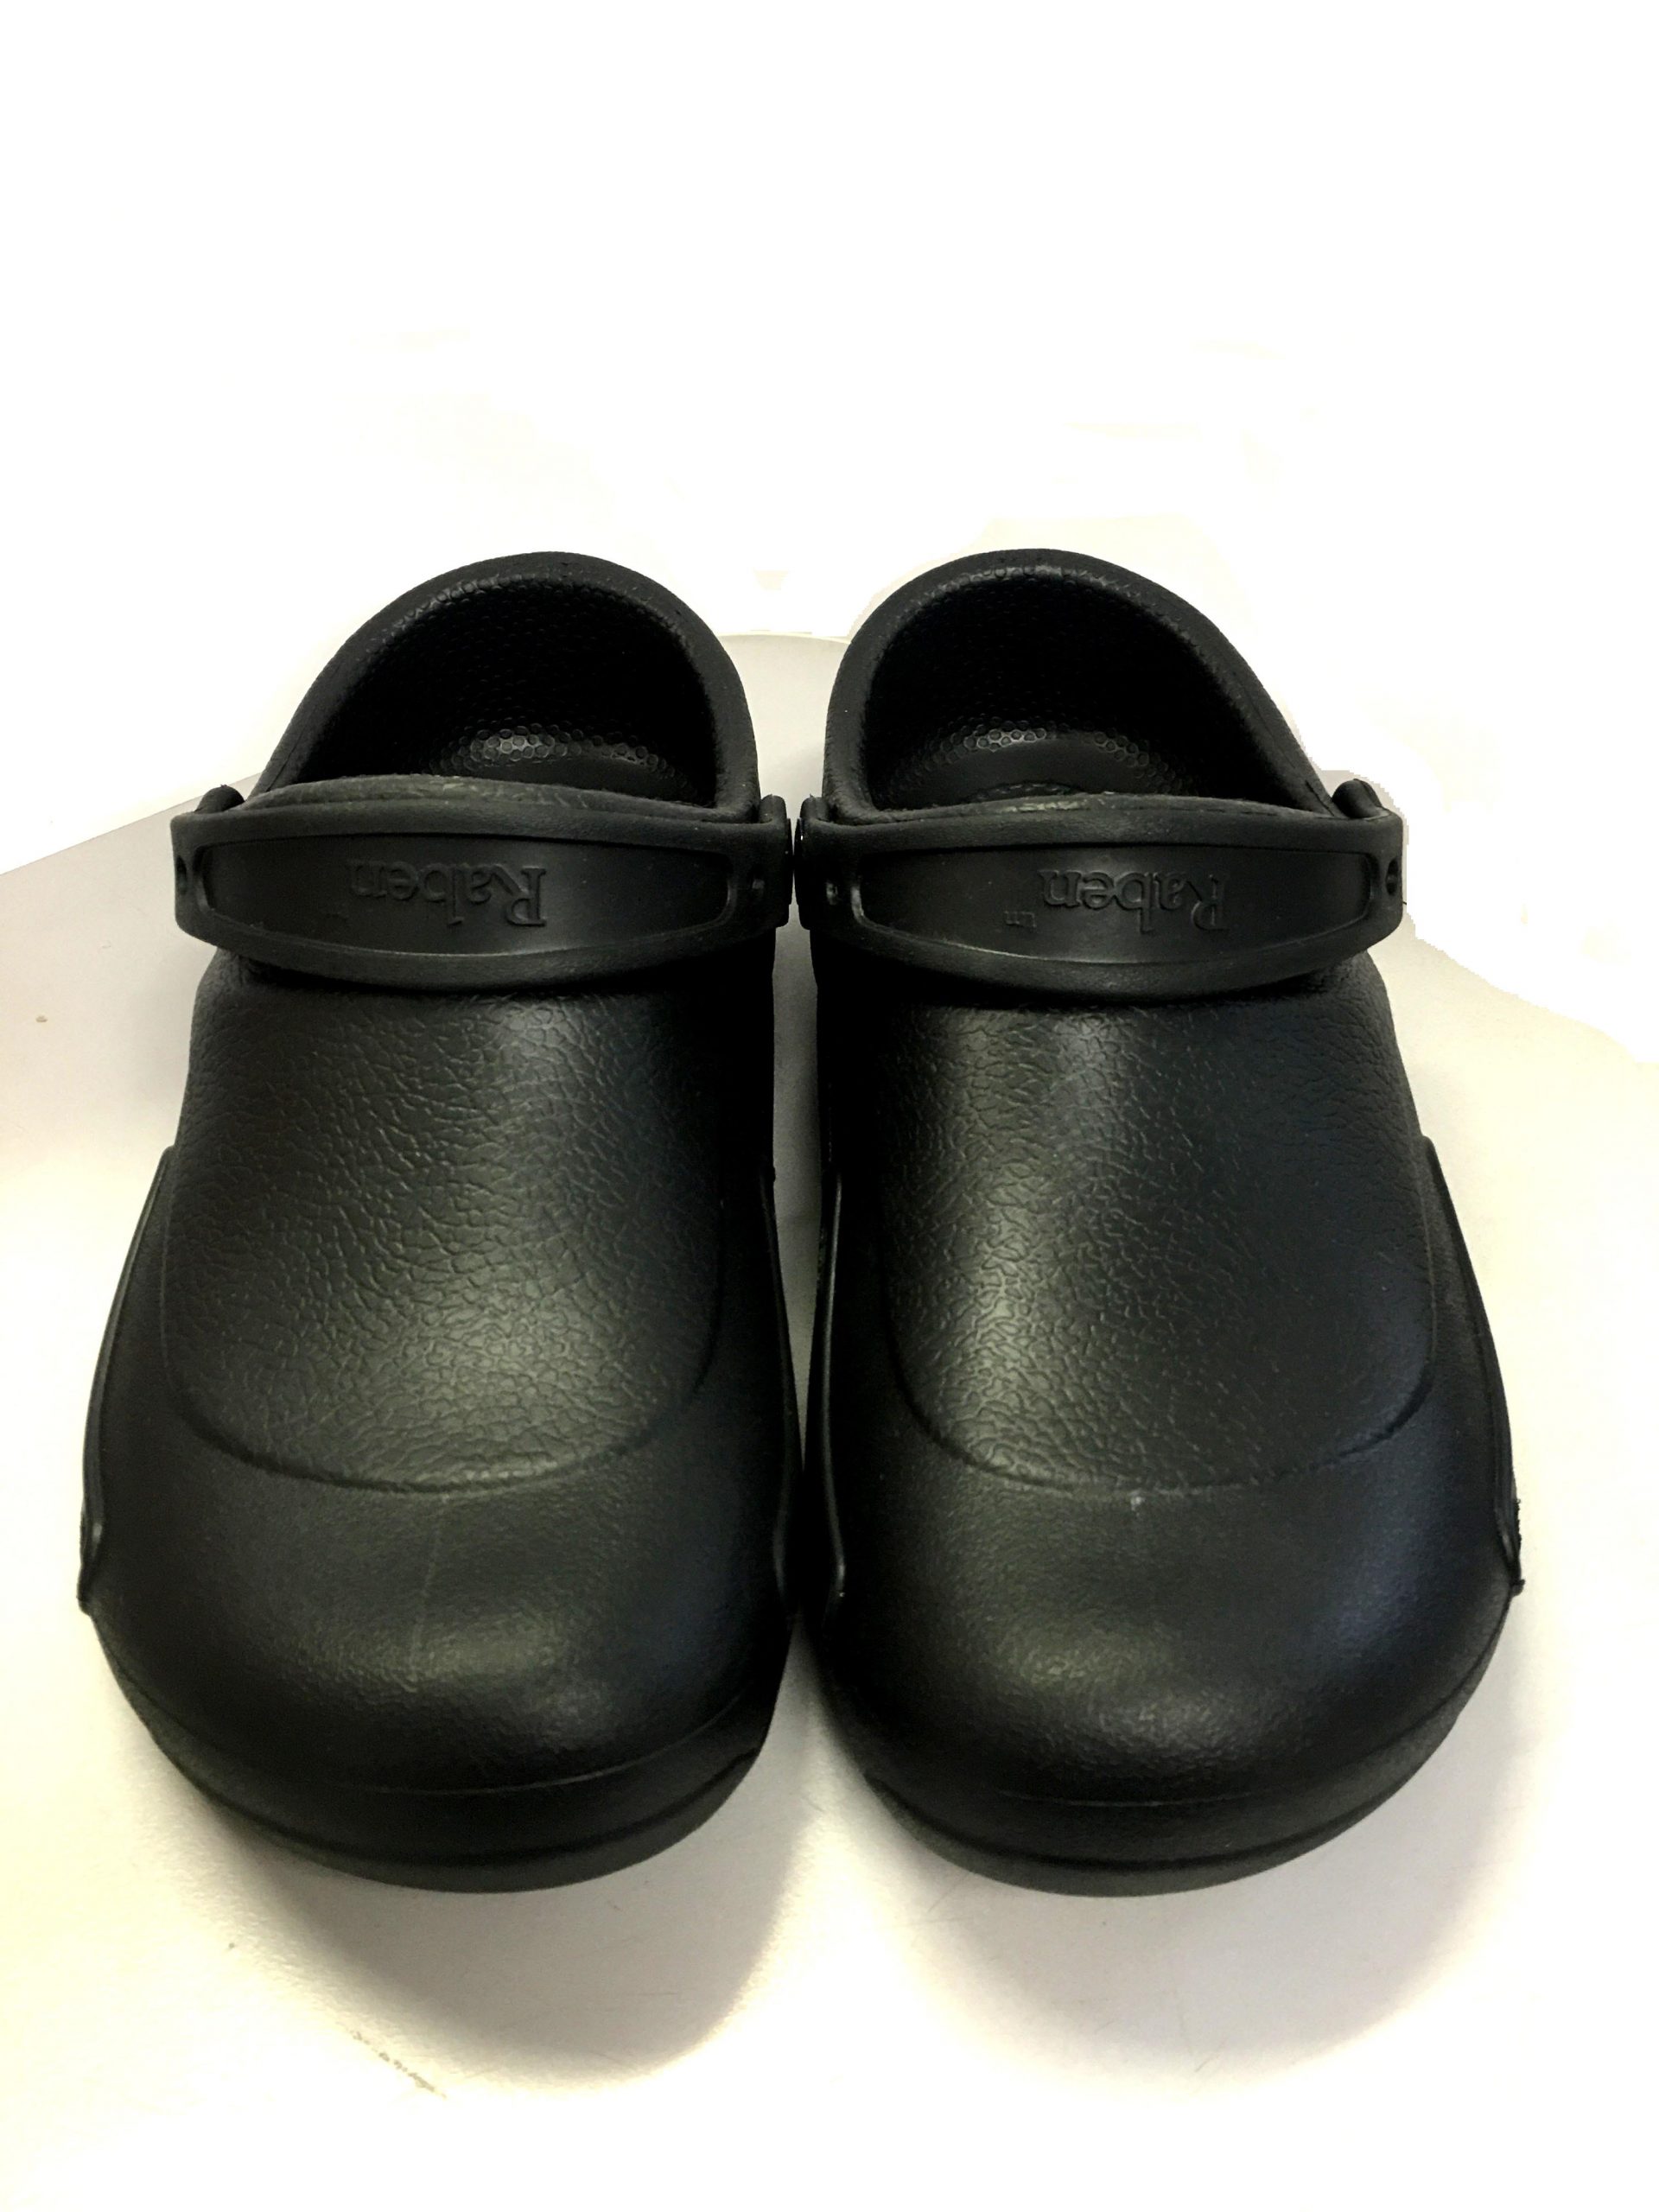 KNS-194 Kitchen Clogs in Black - Raben Footwear